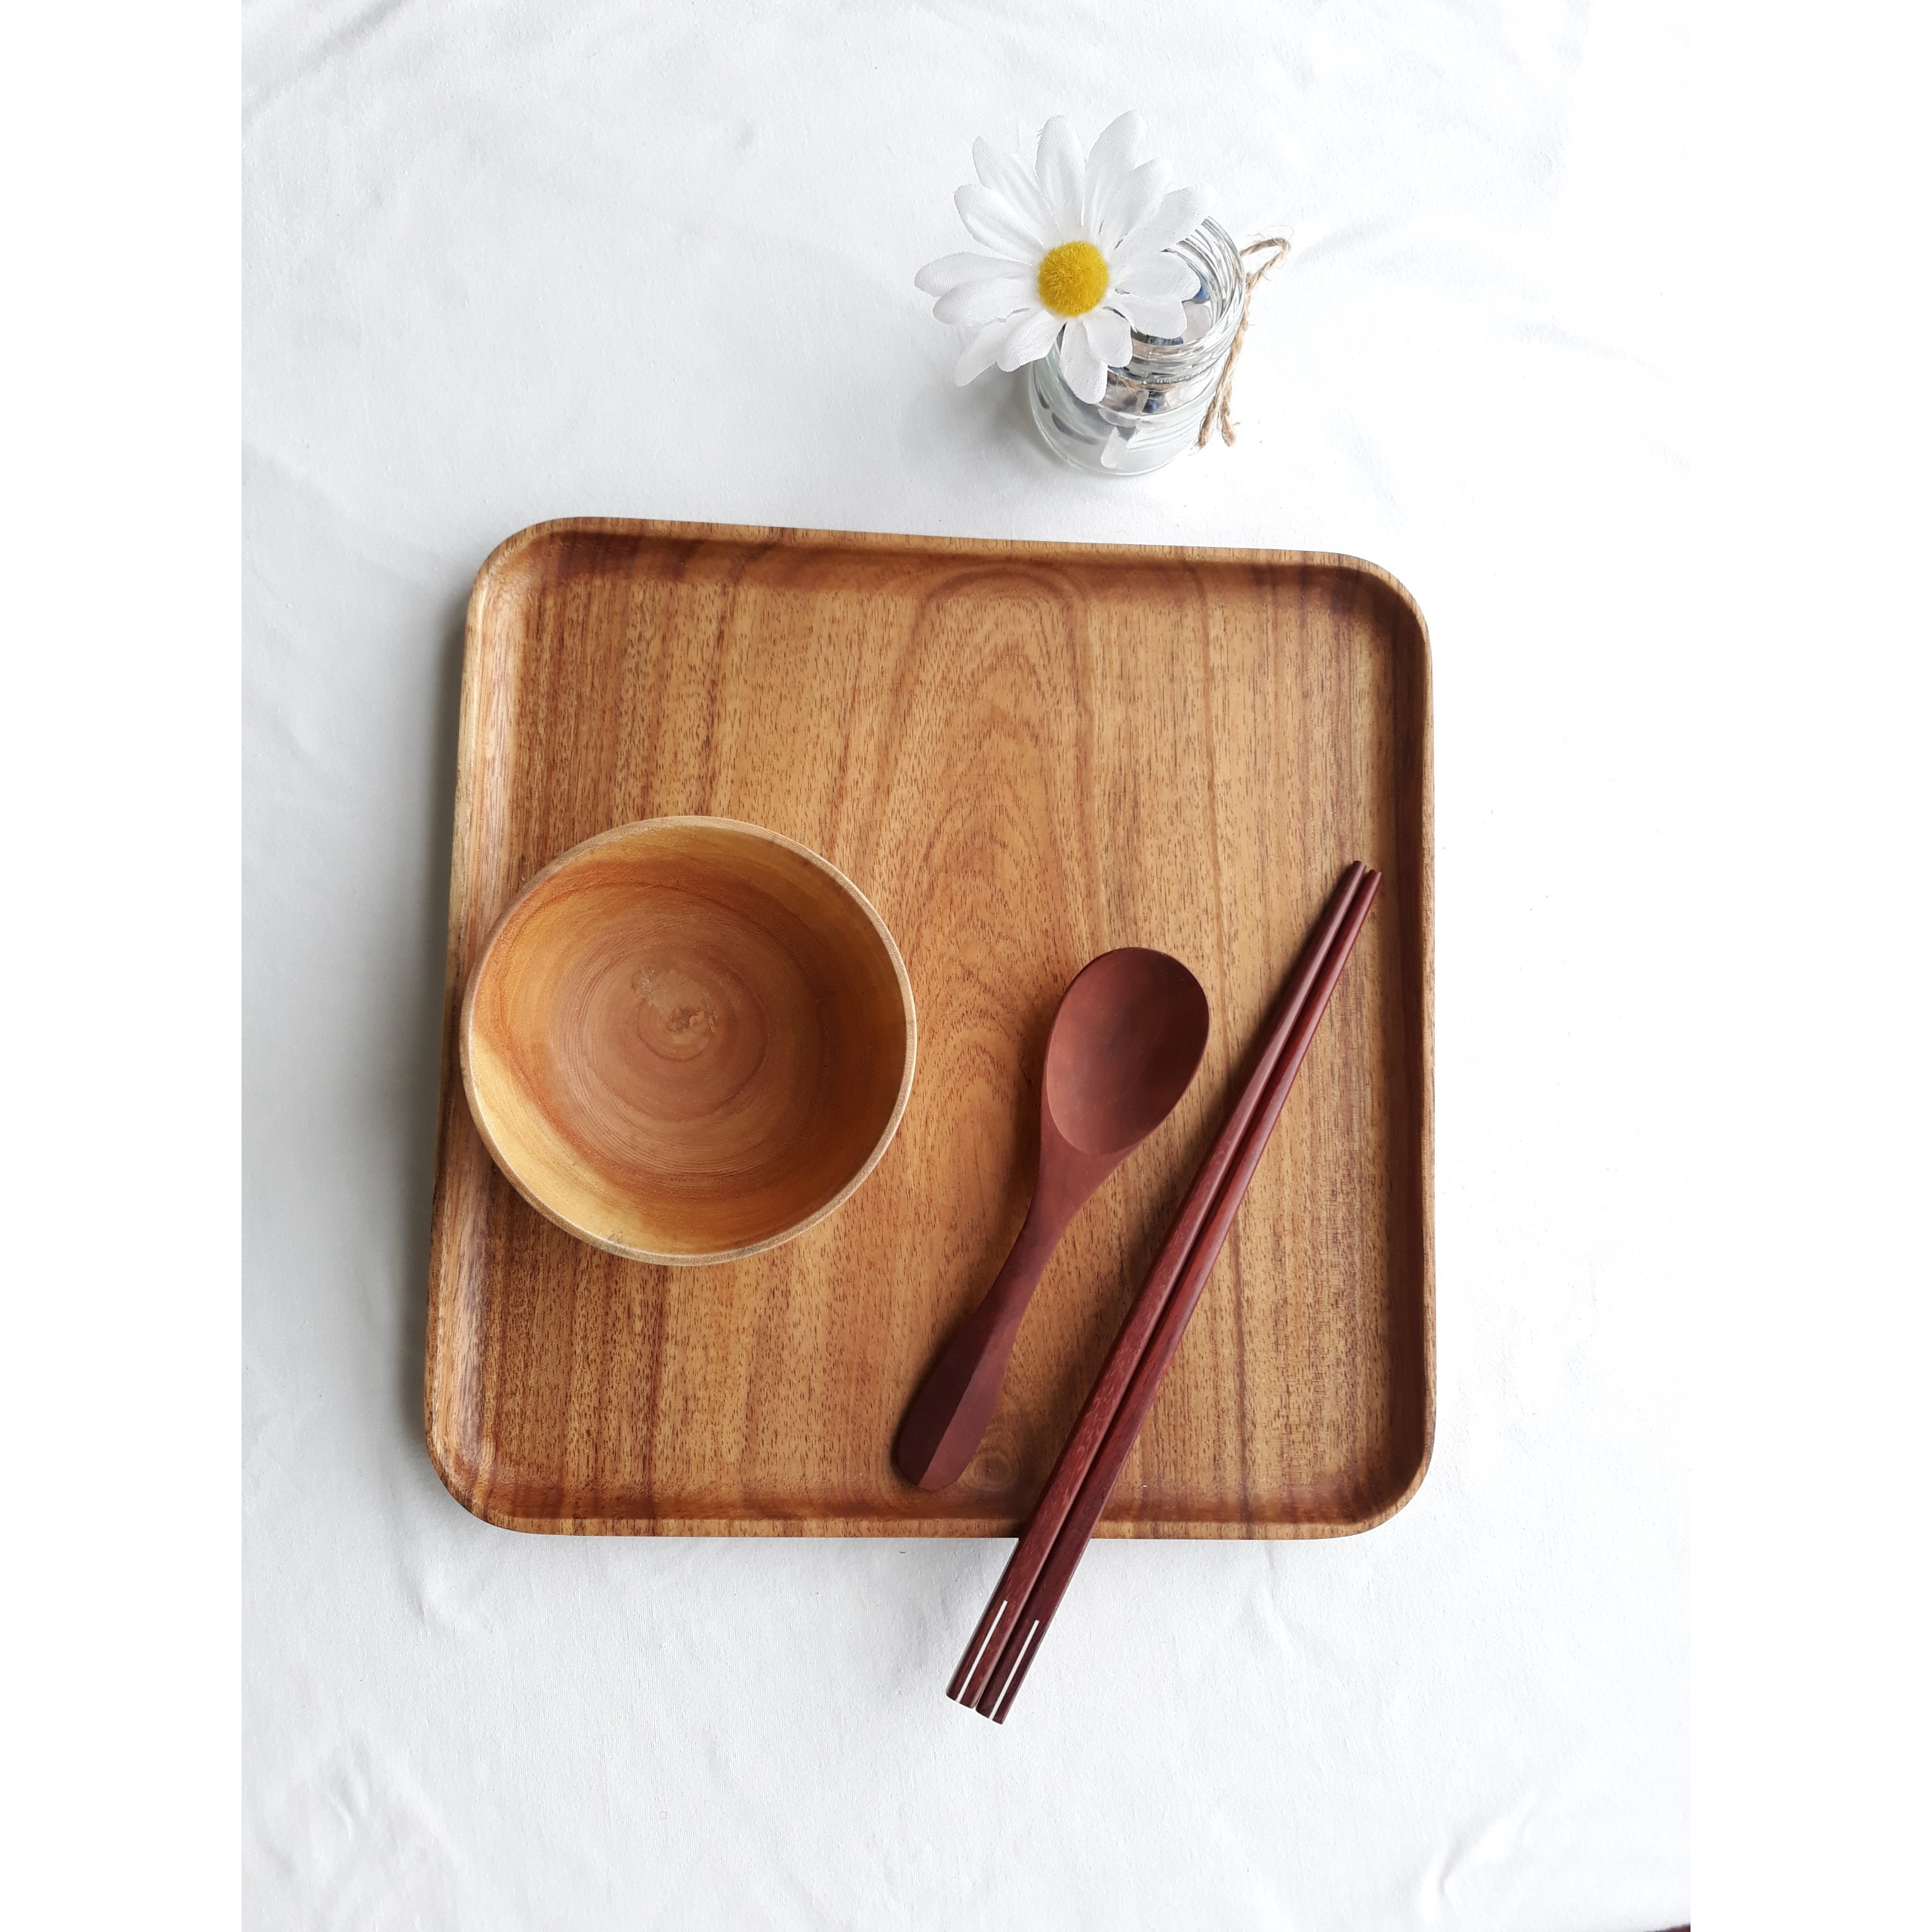 Khay gỗ đựng trà, bánh, khay phục vụ - Chữ nhật nhỏ: 25 x 14.5 cm